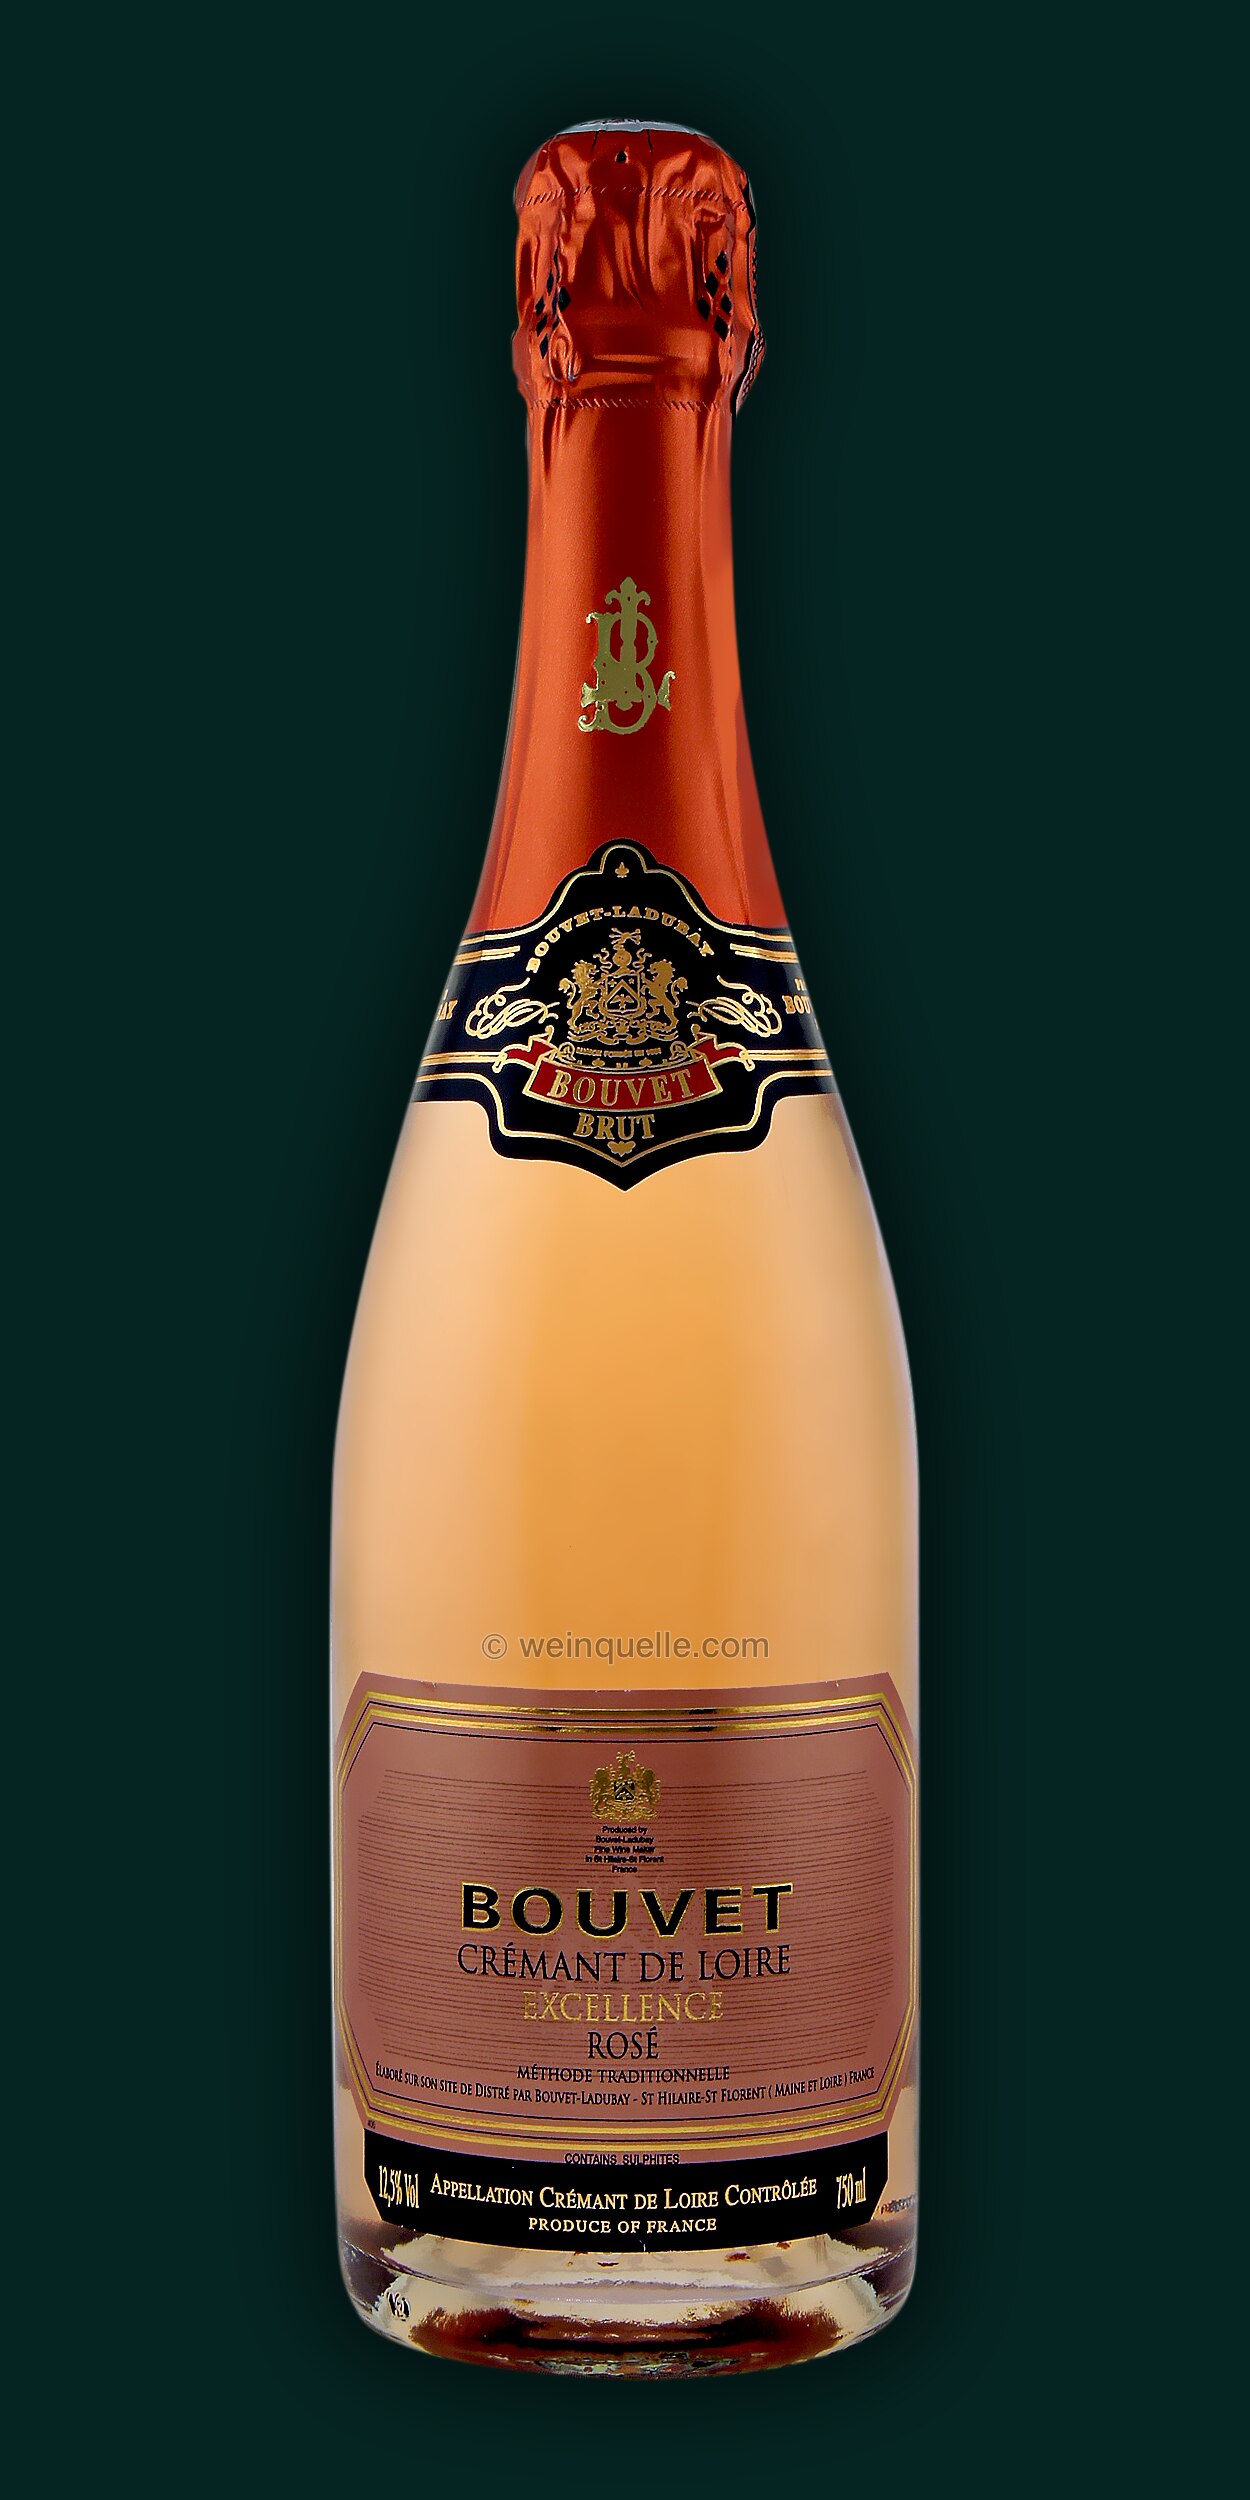 Excellence Loire - Weinquelle de Rosé, Bouvet Lühmann € Cremant 12,95